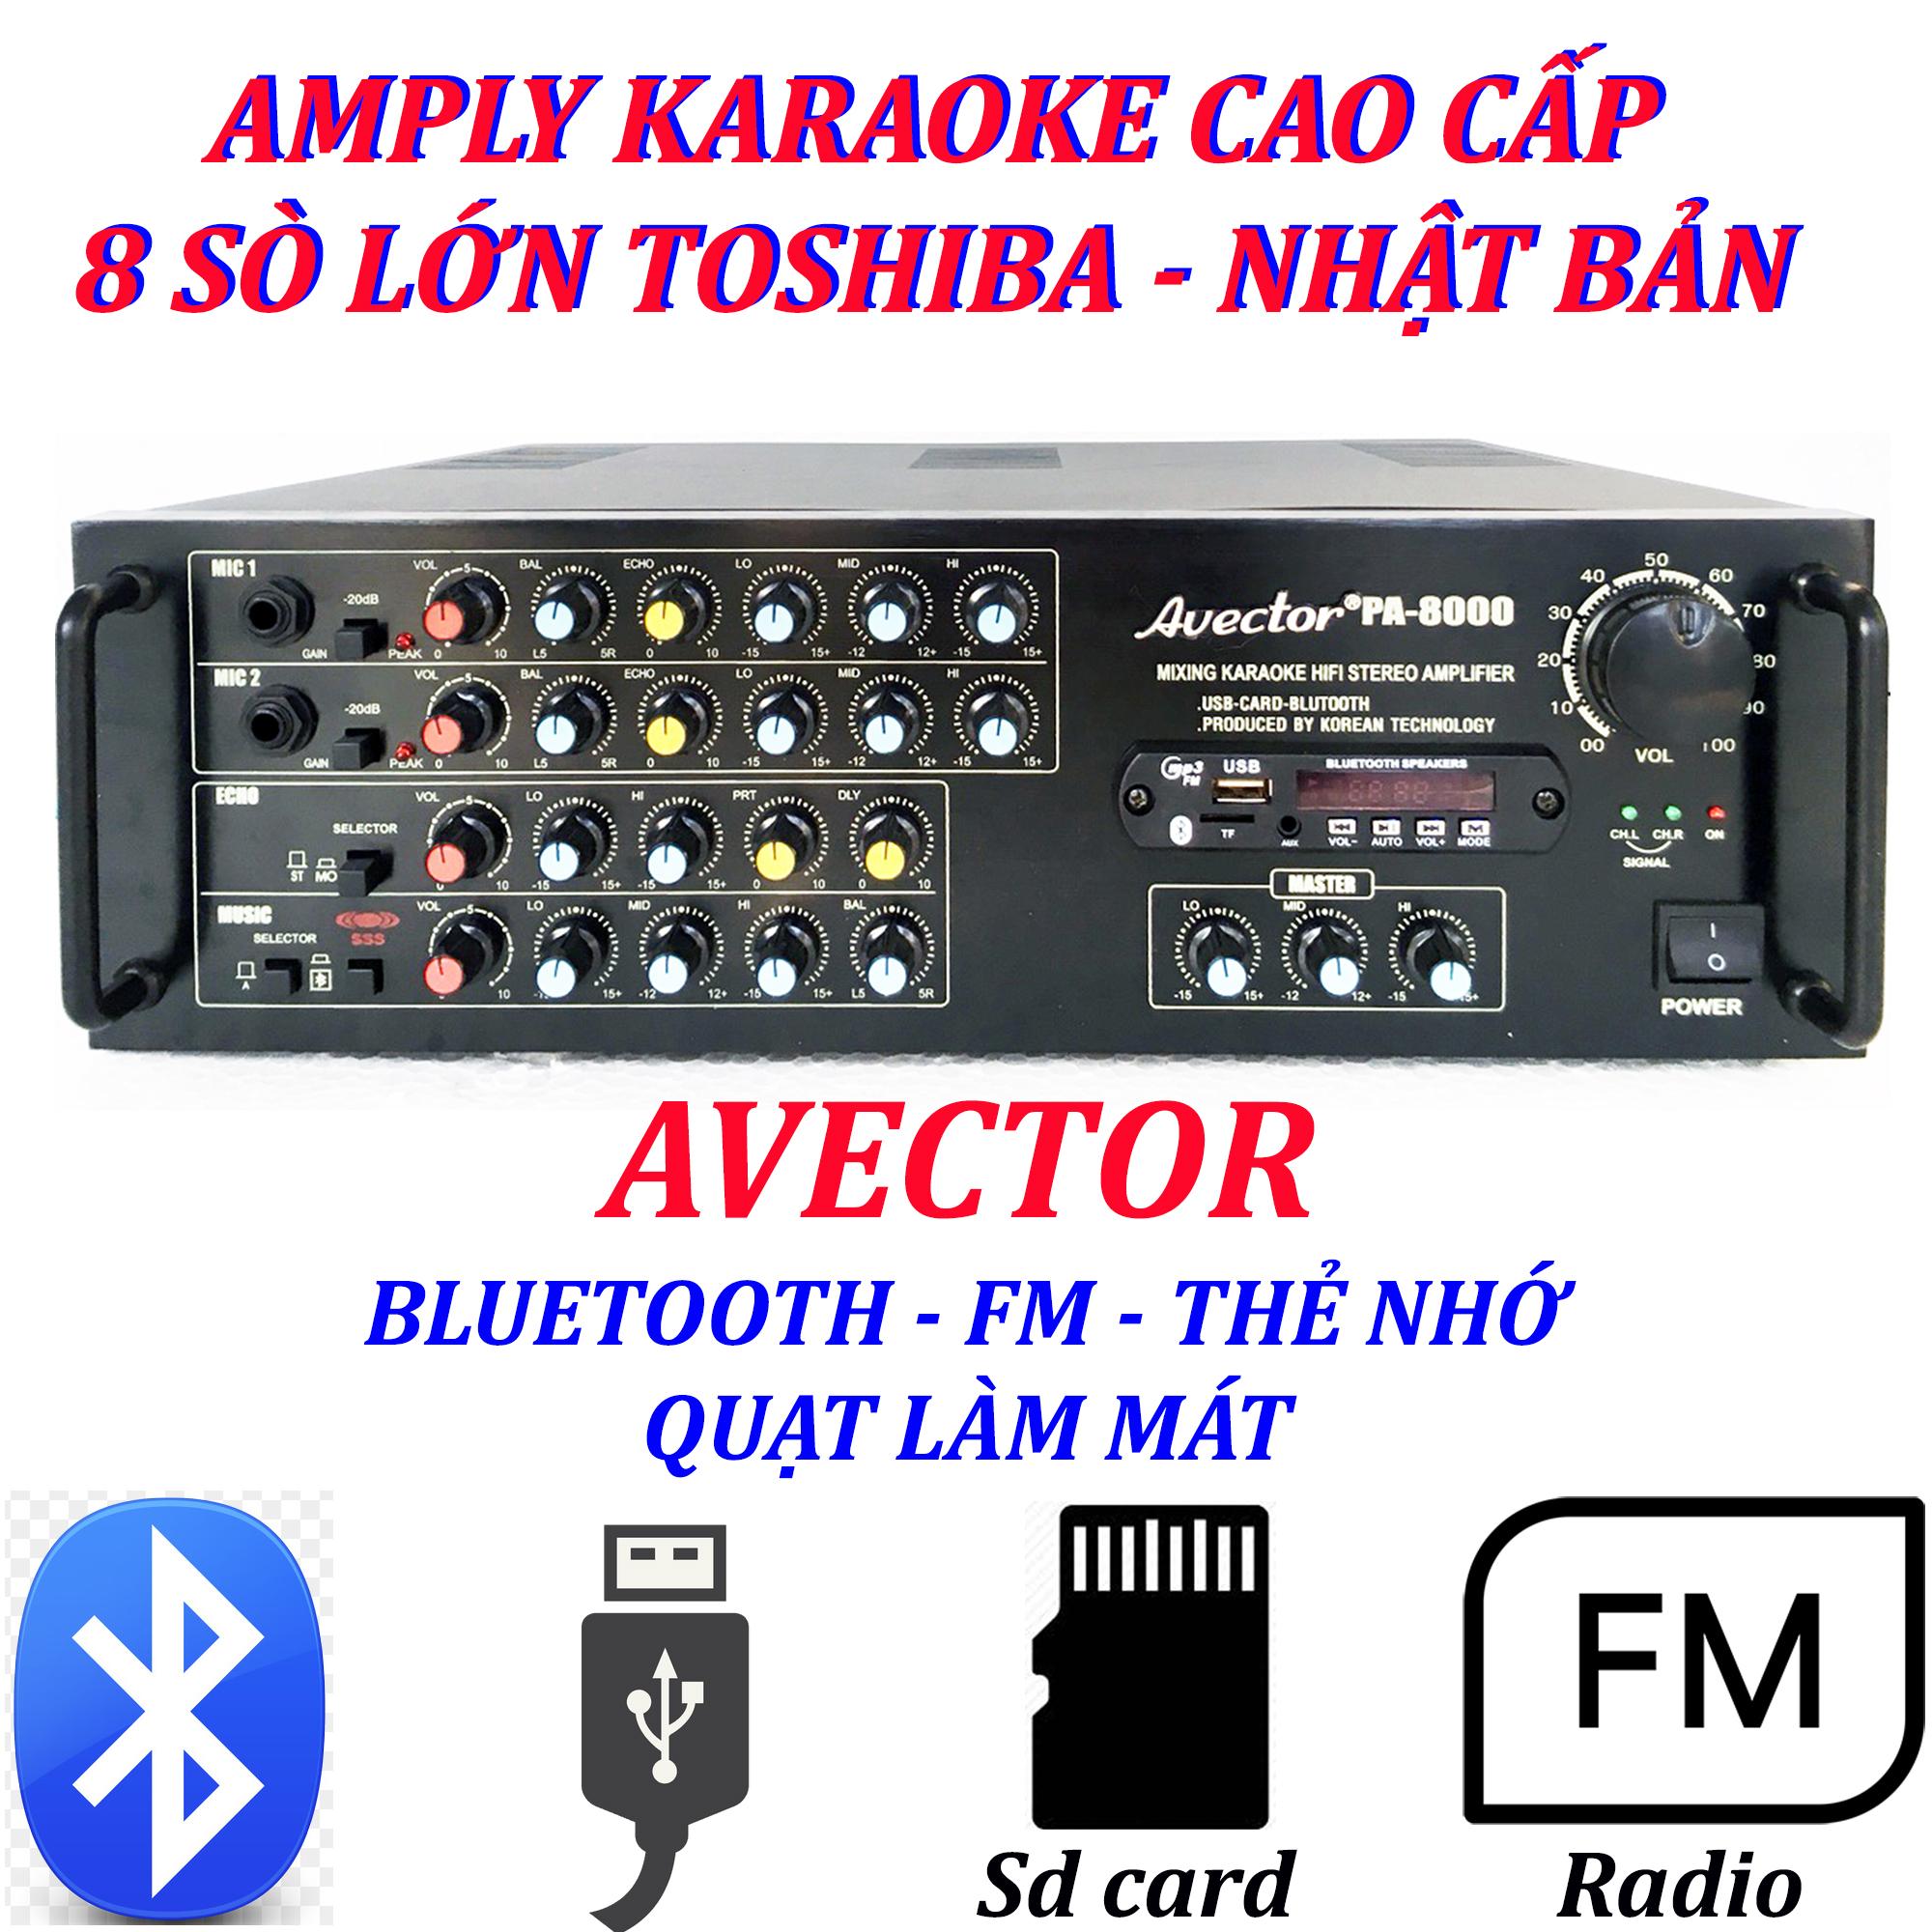 Dàn karaoke gia đình - Dàn karaoke bluetooth - Dàn karaoke 3 tấc giá rẻ Amply Avector 8000 Và Loa...